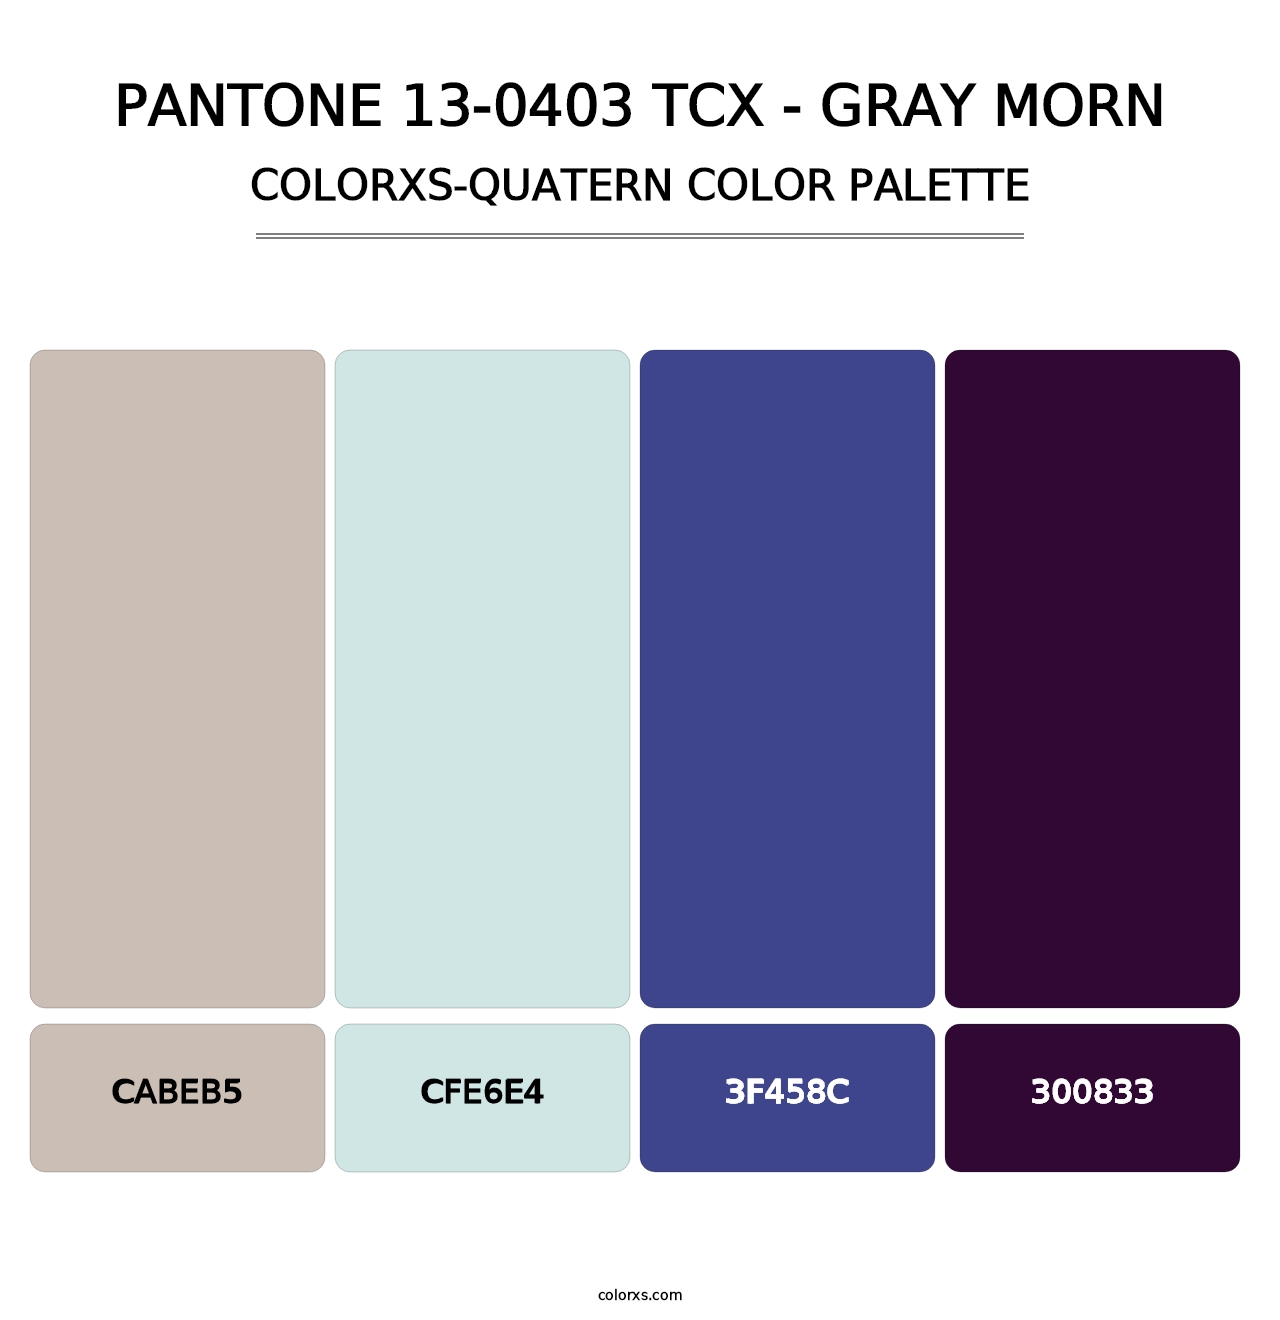 PANTONE 13-0403 TCX - Gray Morn - Colorxs Quatern Palette